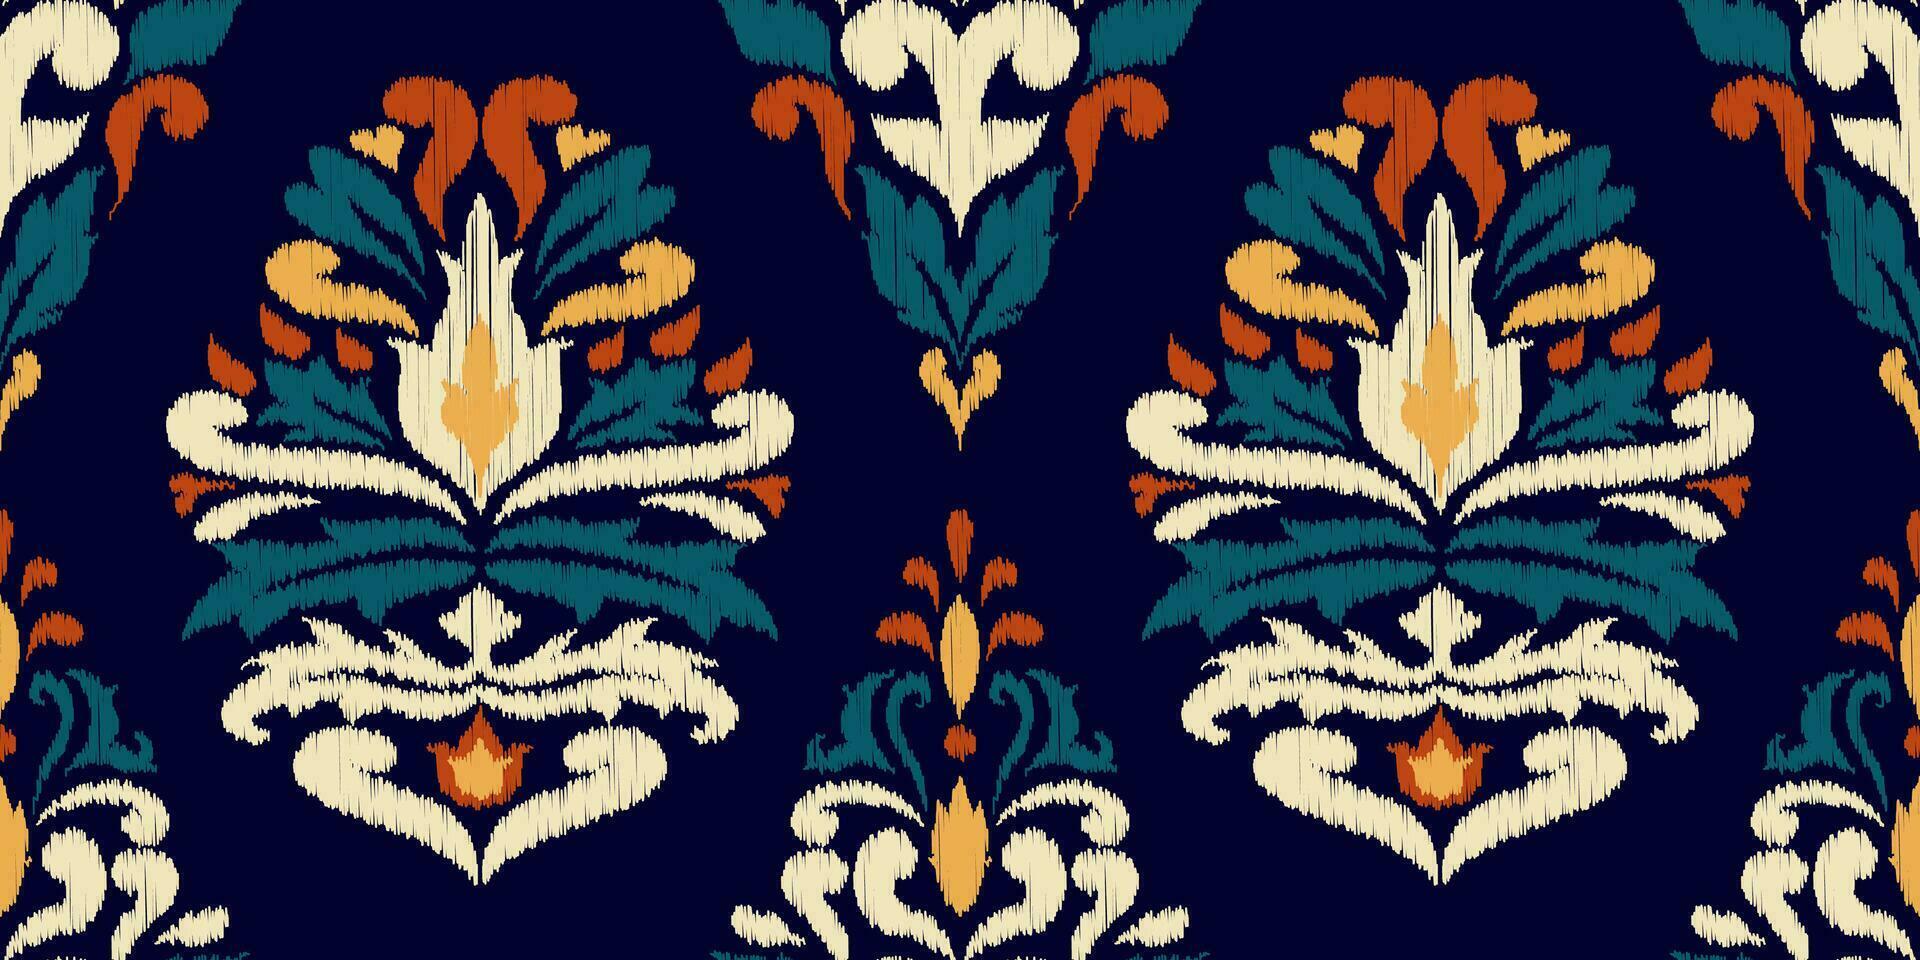 ikat etnisch oosters naadloos patroon traditioneel. ontwerp voor kleding, stof, tapijt, behang, textuur, verpakking vector